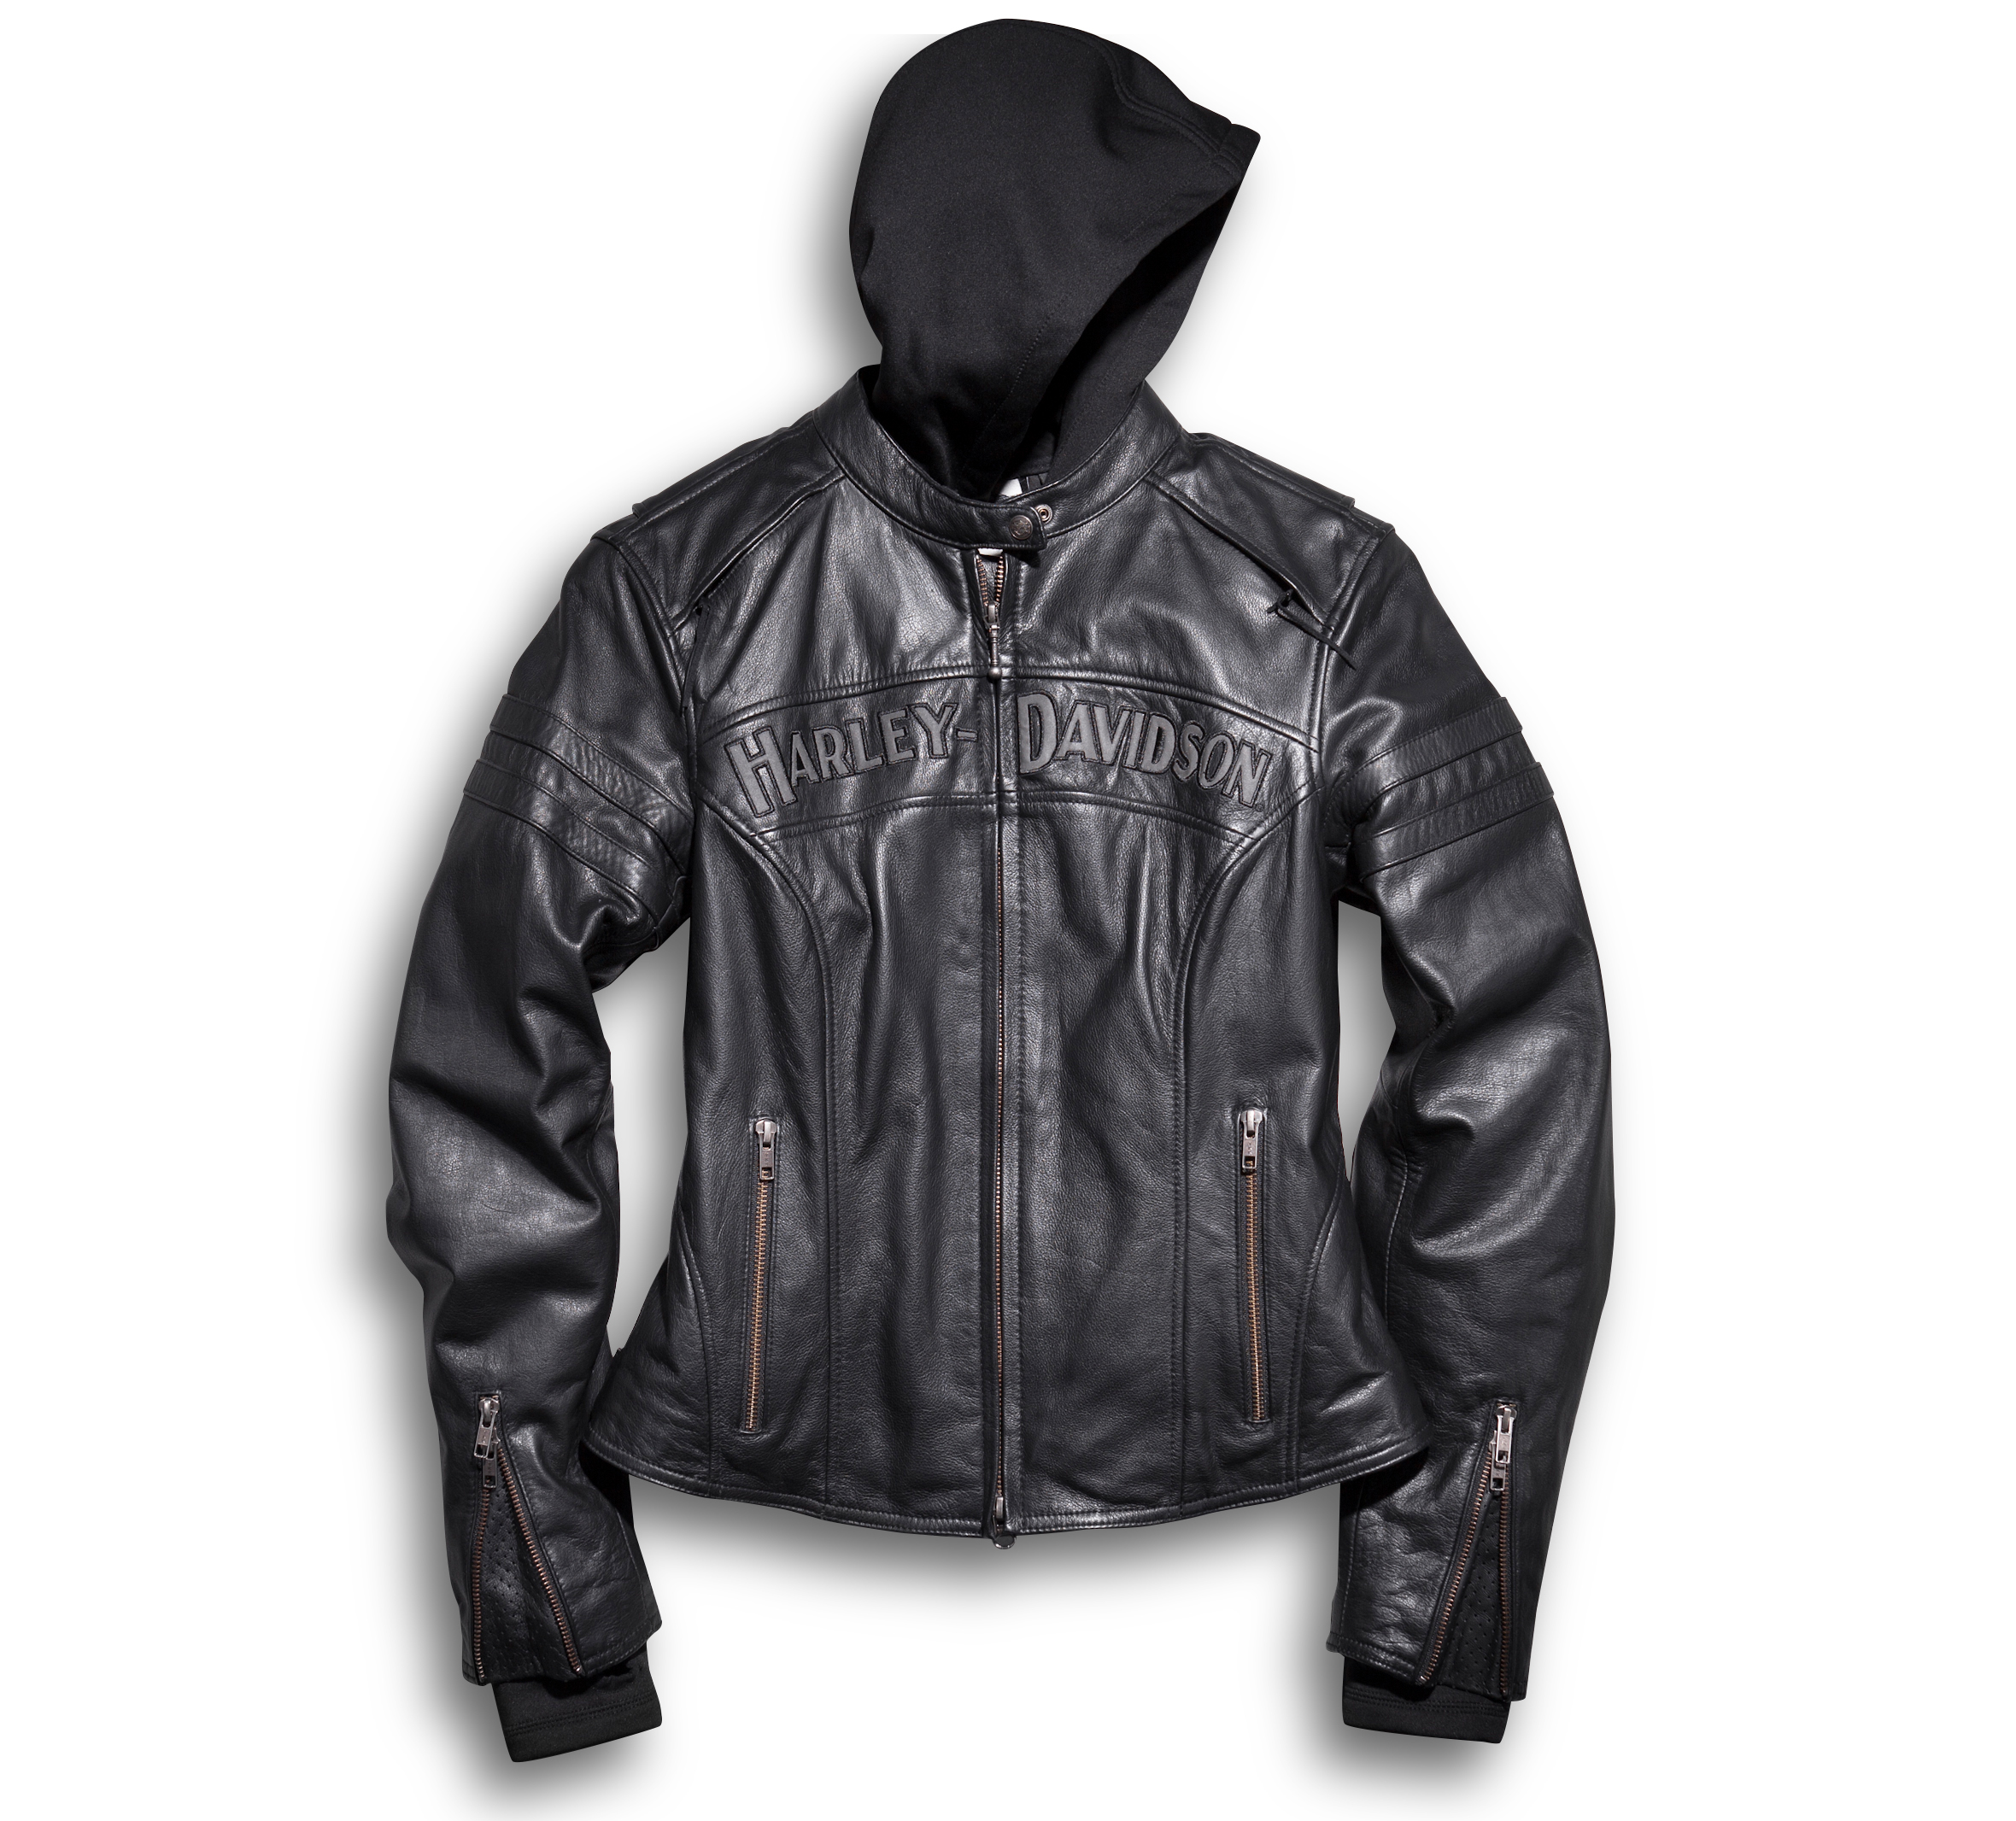 Harley Davidson Leather Jacket - ayanawebzine.com